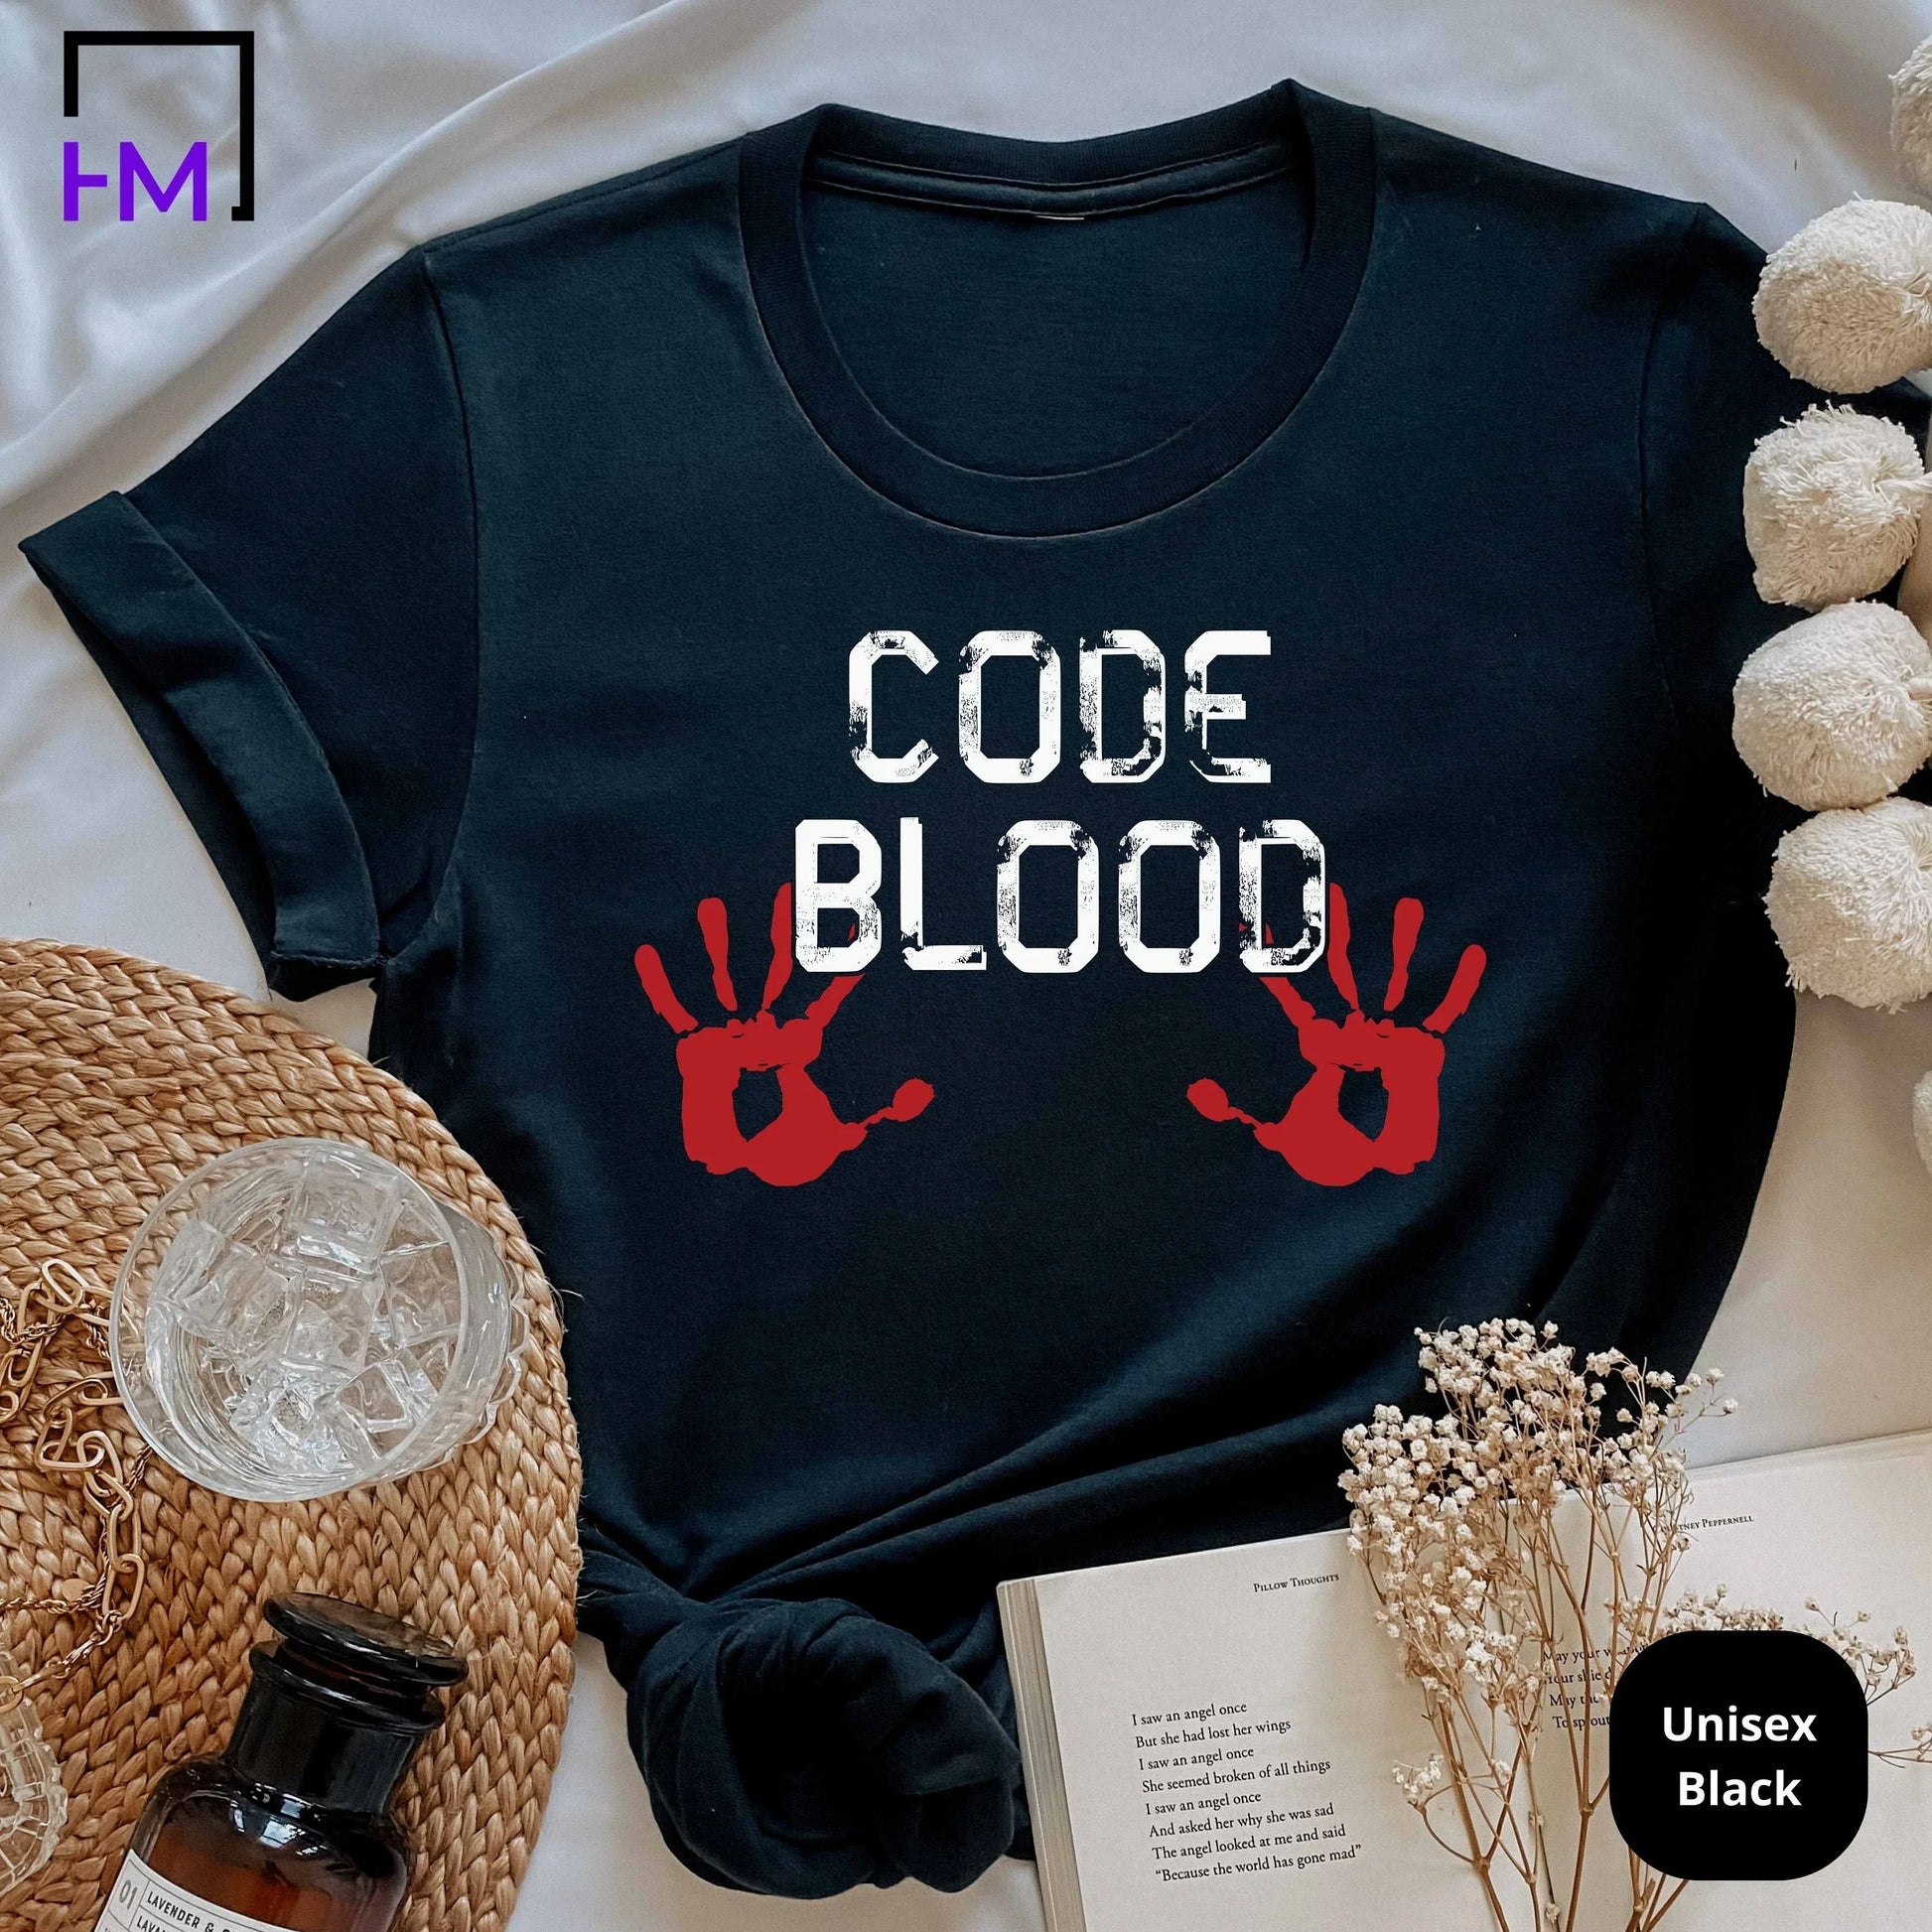 Computer Geek Gifts, Software Engineer Shirt, Computer Shirt, Nerd Shirt, Programmer Shirt, Coding Shirt, Computer Nerd Gift, Hacker Shirt HMDesignStudioUS